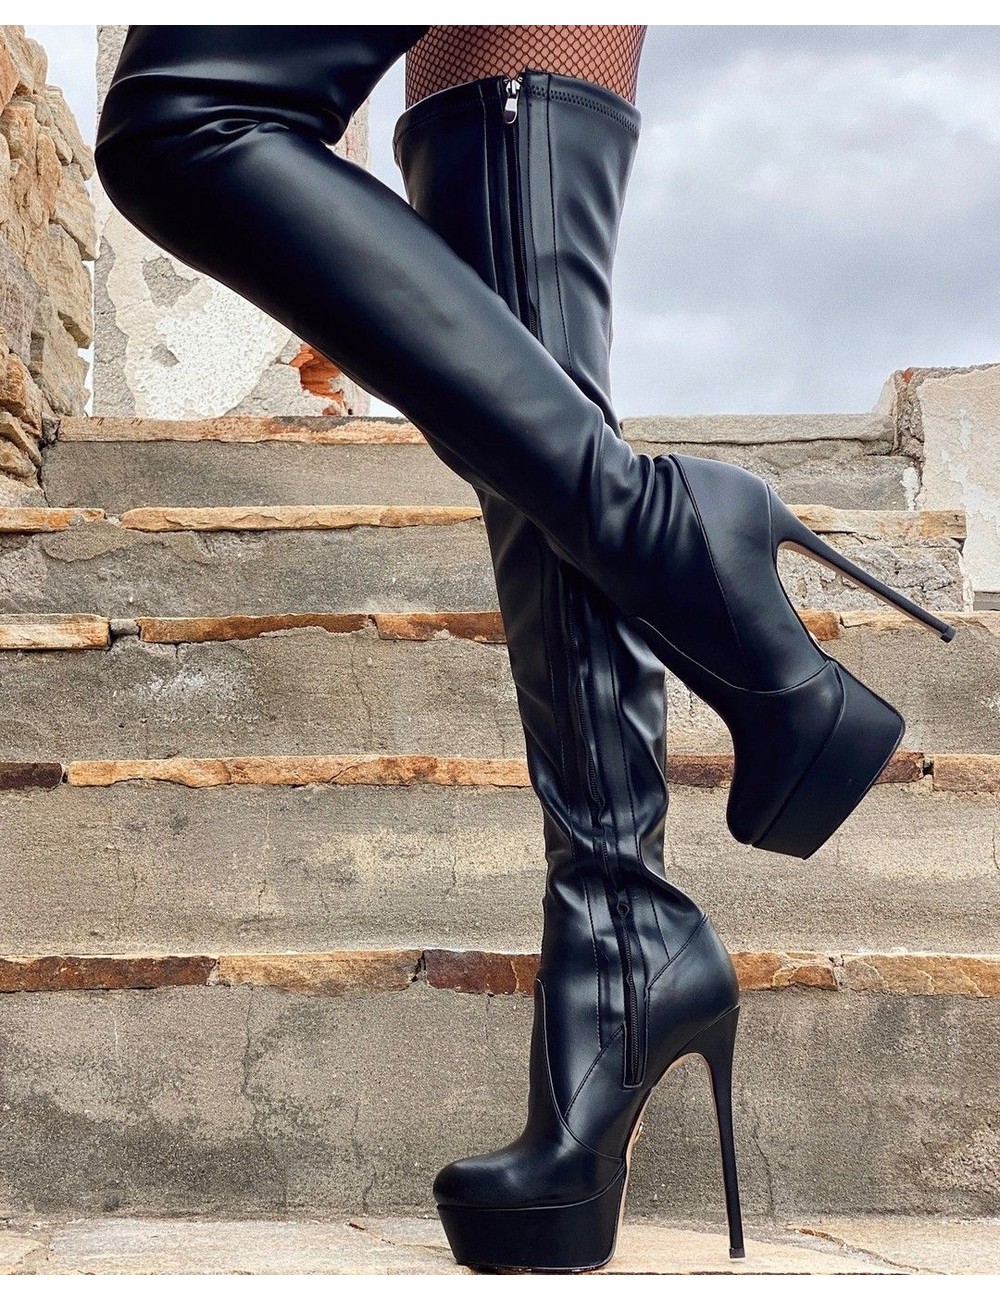 Chiara in the Sutton black matte - Shoebidoo Shoes | Giaro high heels